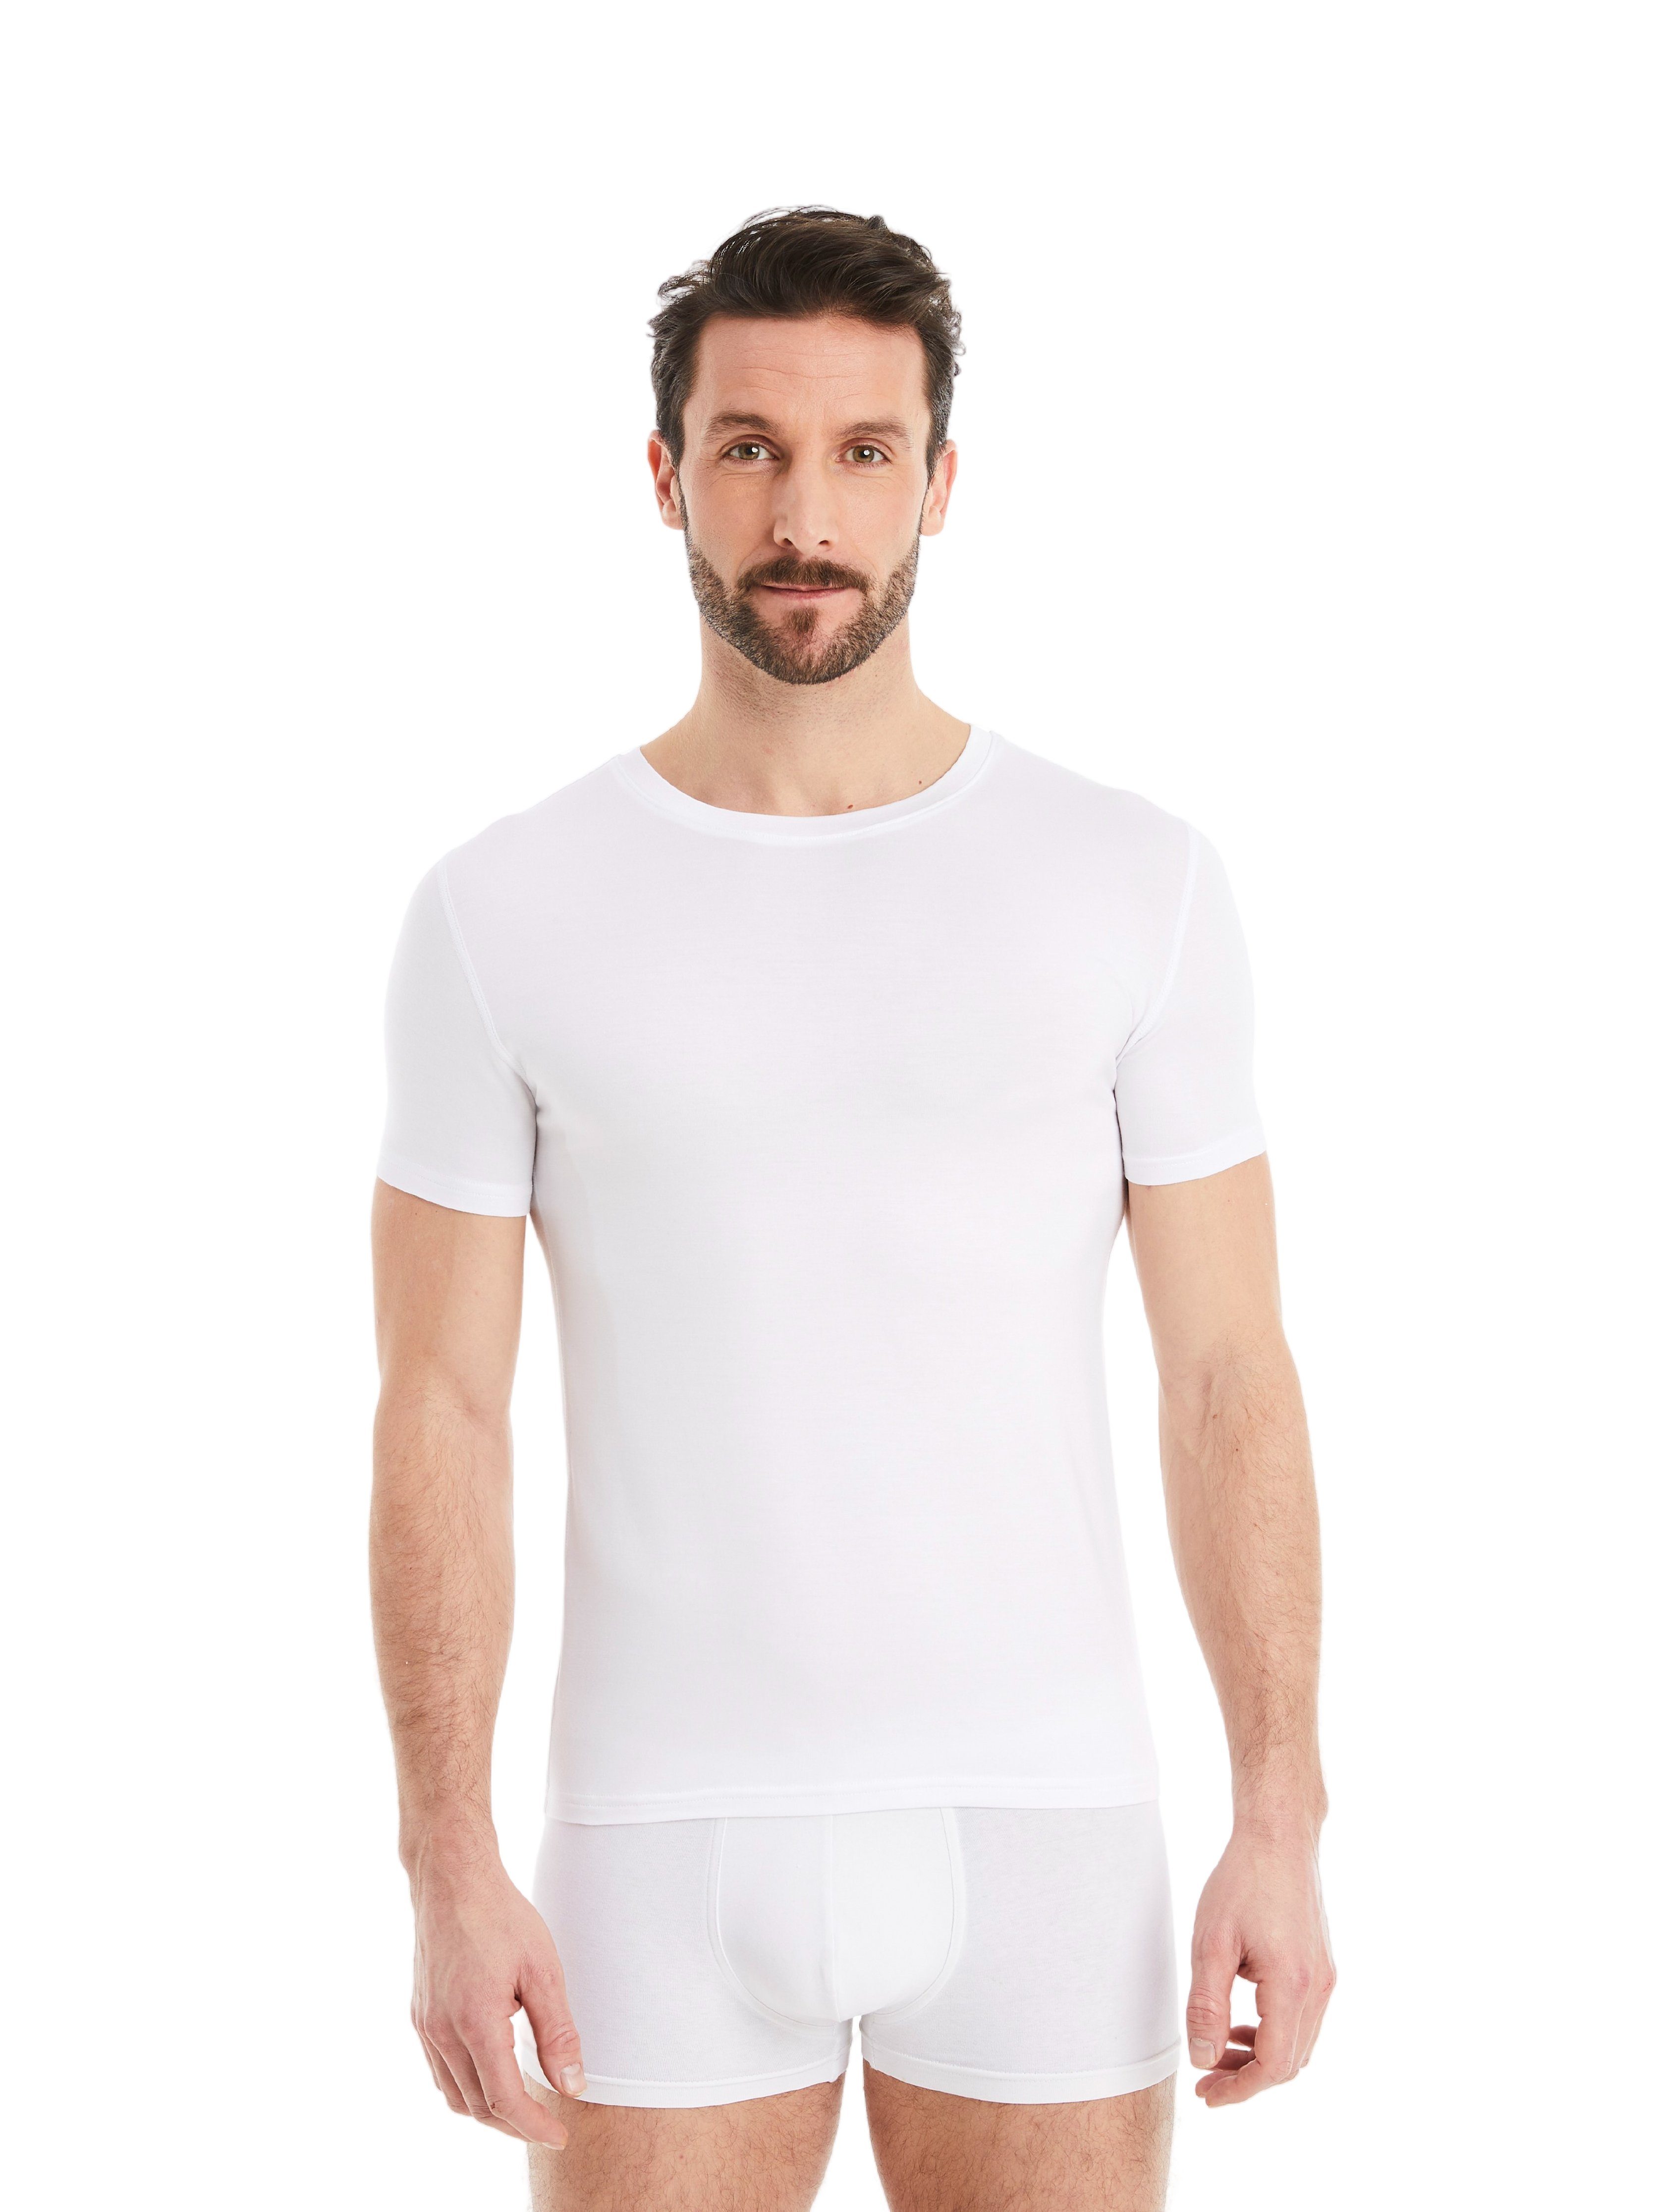 Rundhals FINN mit Unterhemd Tragekomfort Design Kurzarm Stoff, Herren feiner Unterhemd Business Weiß maximaler Micro-Modal